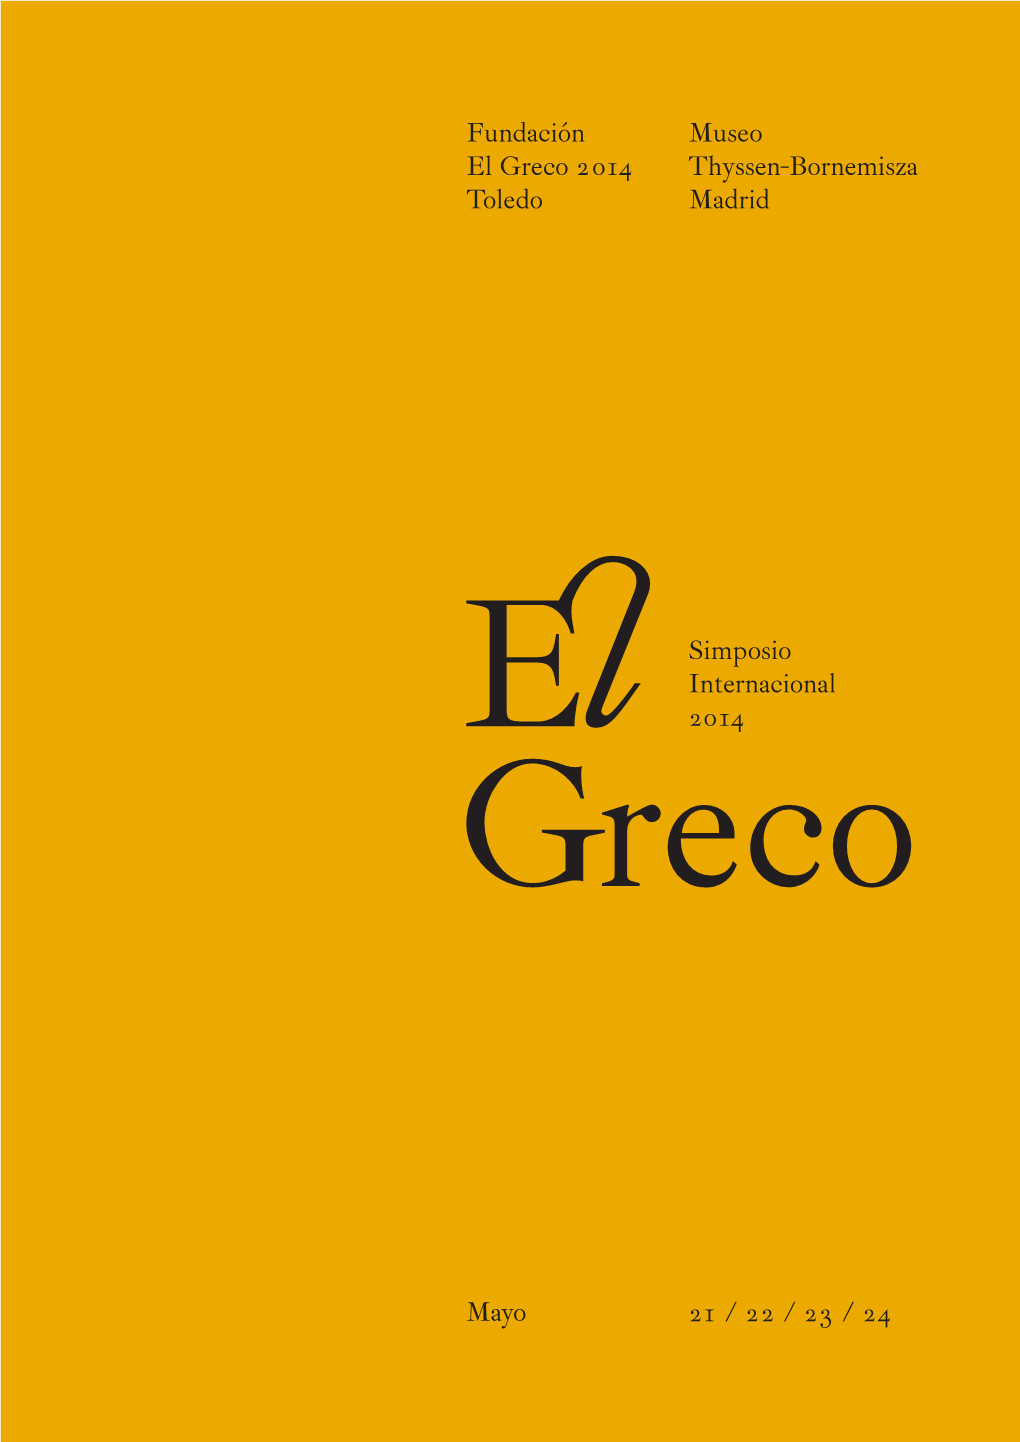 Simposio Internacional El Greco 2014